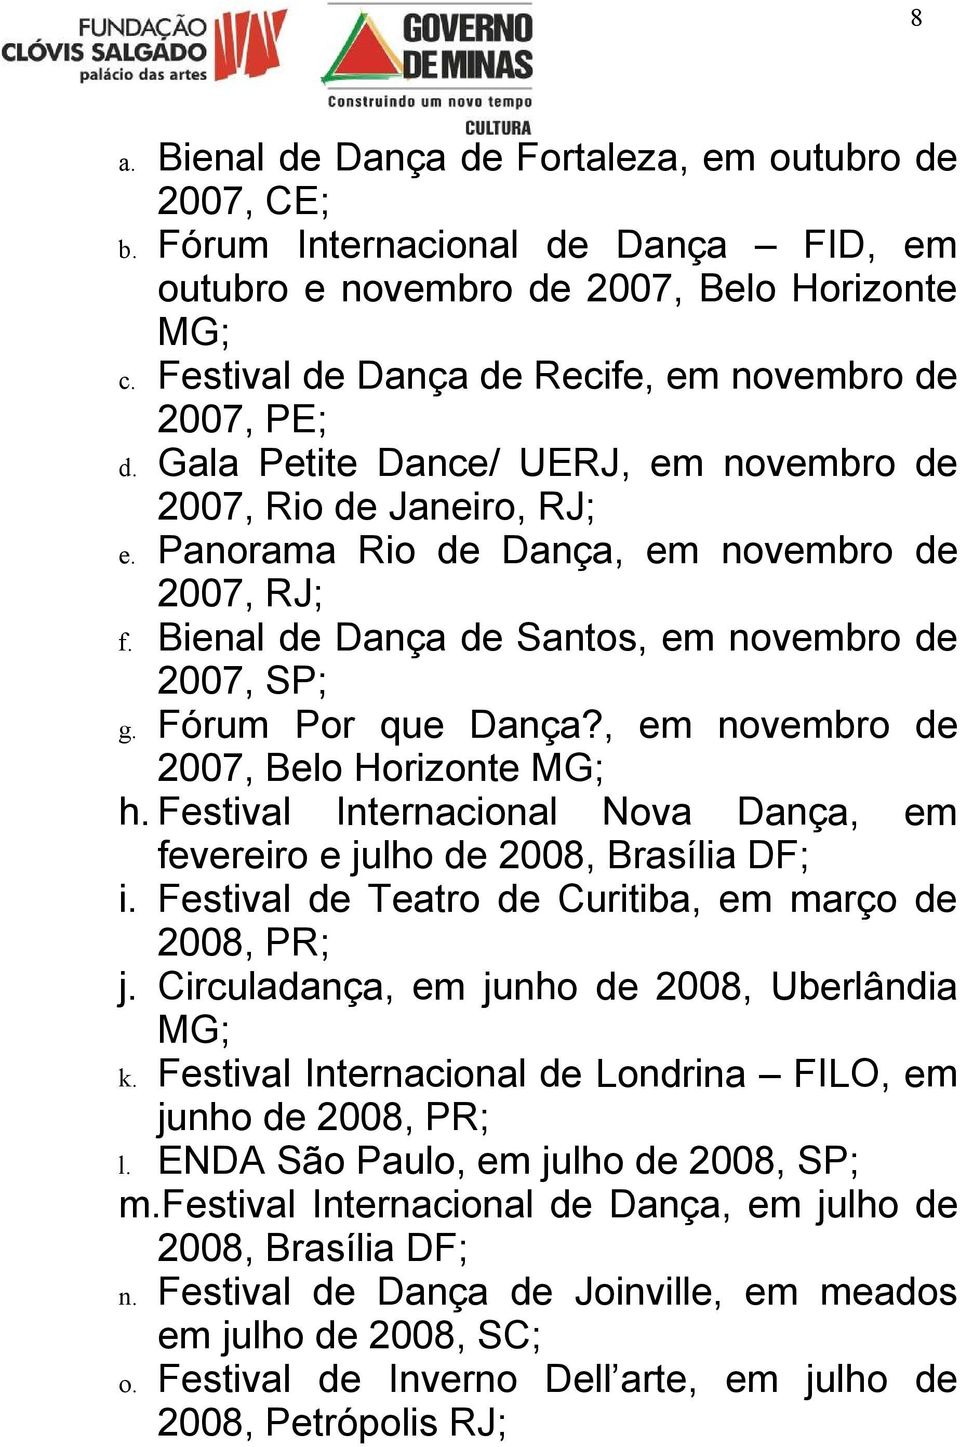 Bienal de Dança de Santos, em novembro de 2007, SP; g. Fórum Por que Dança?, em novembro de 2007, Belo Horizonte MG; h. Festival Internacional Nova Dança, em fevereiro e julho de 2008, Brasília DF; i.